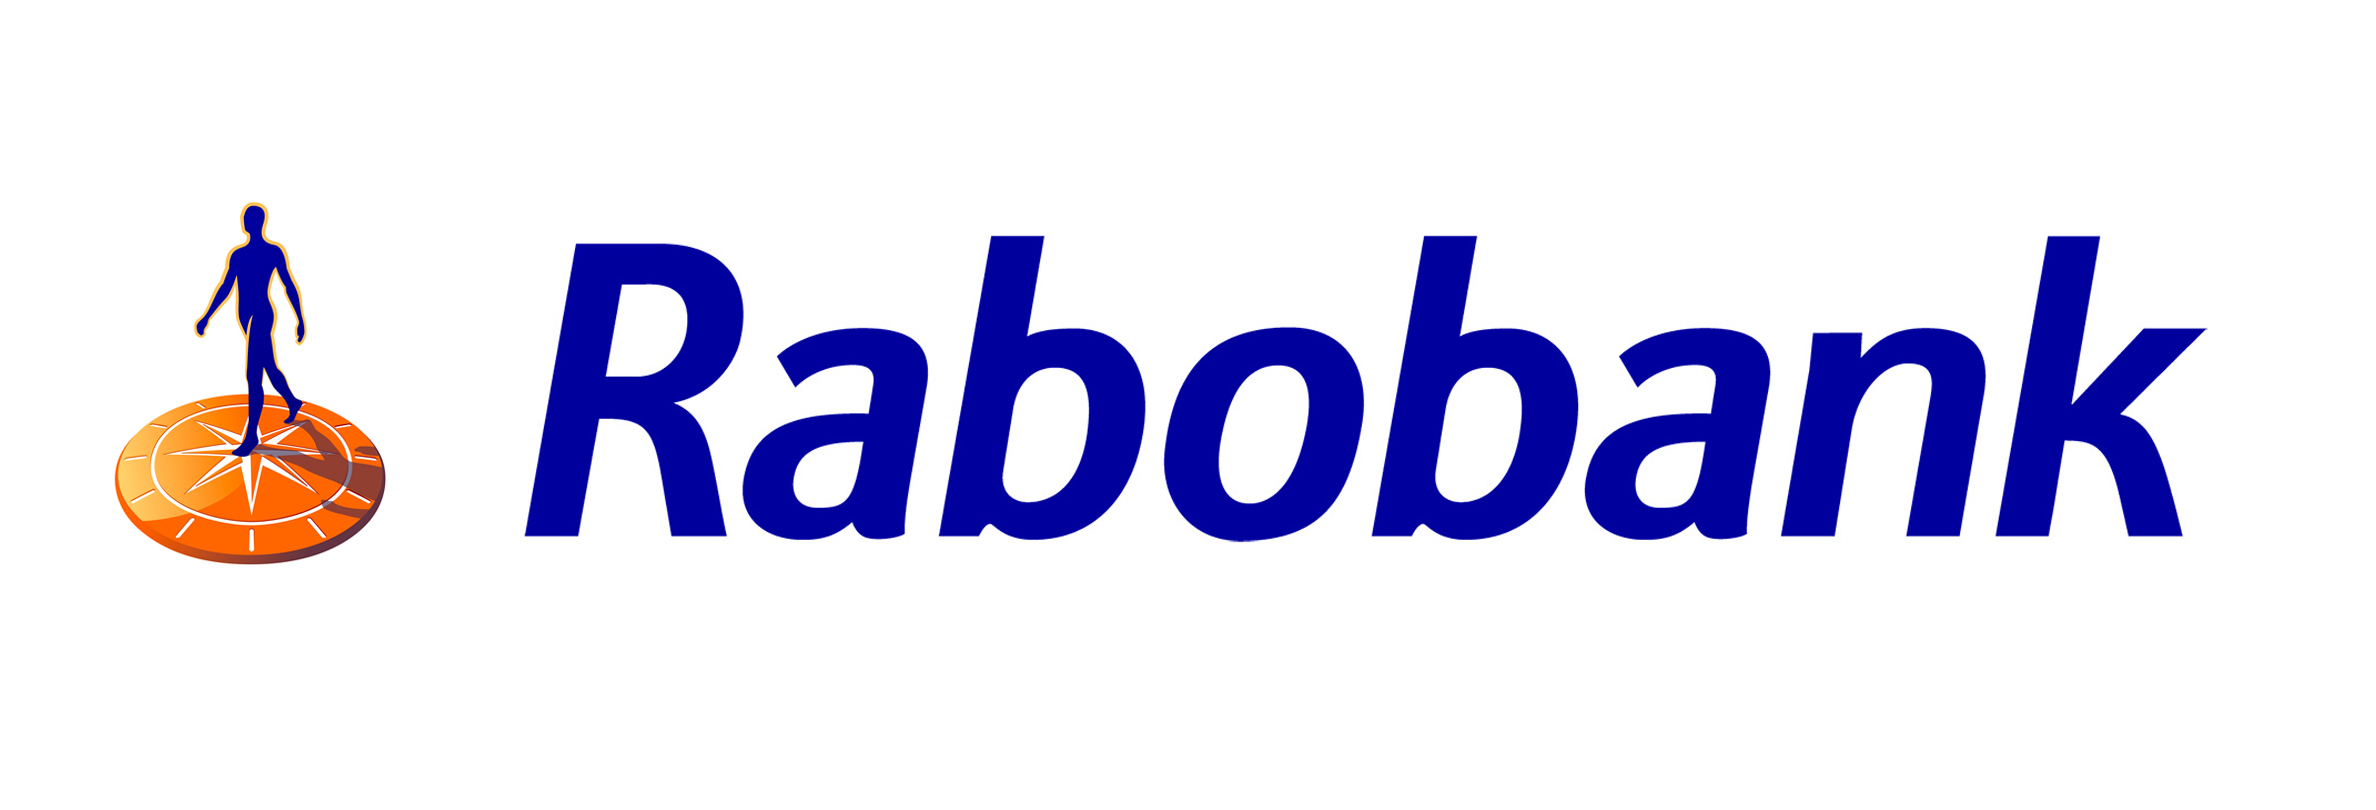 Rabobank-V2-JPEG.jpg